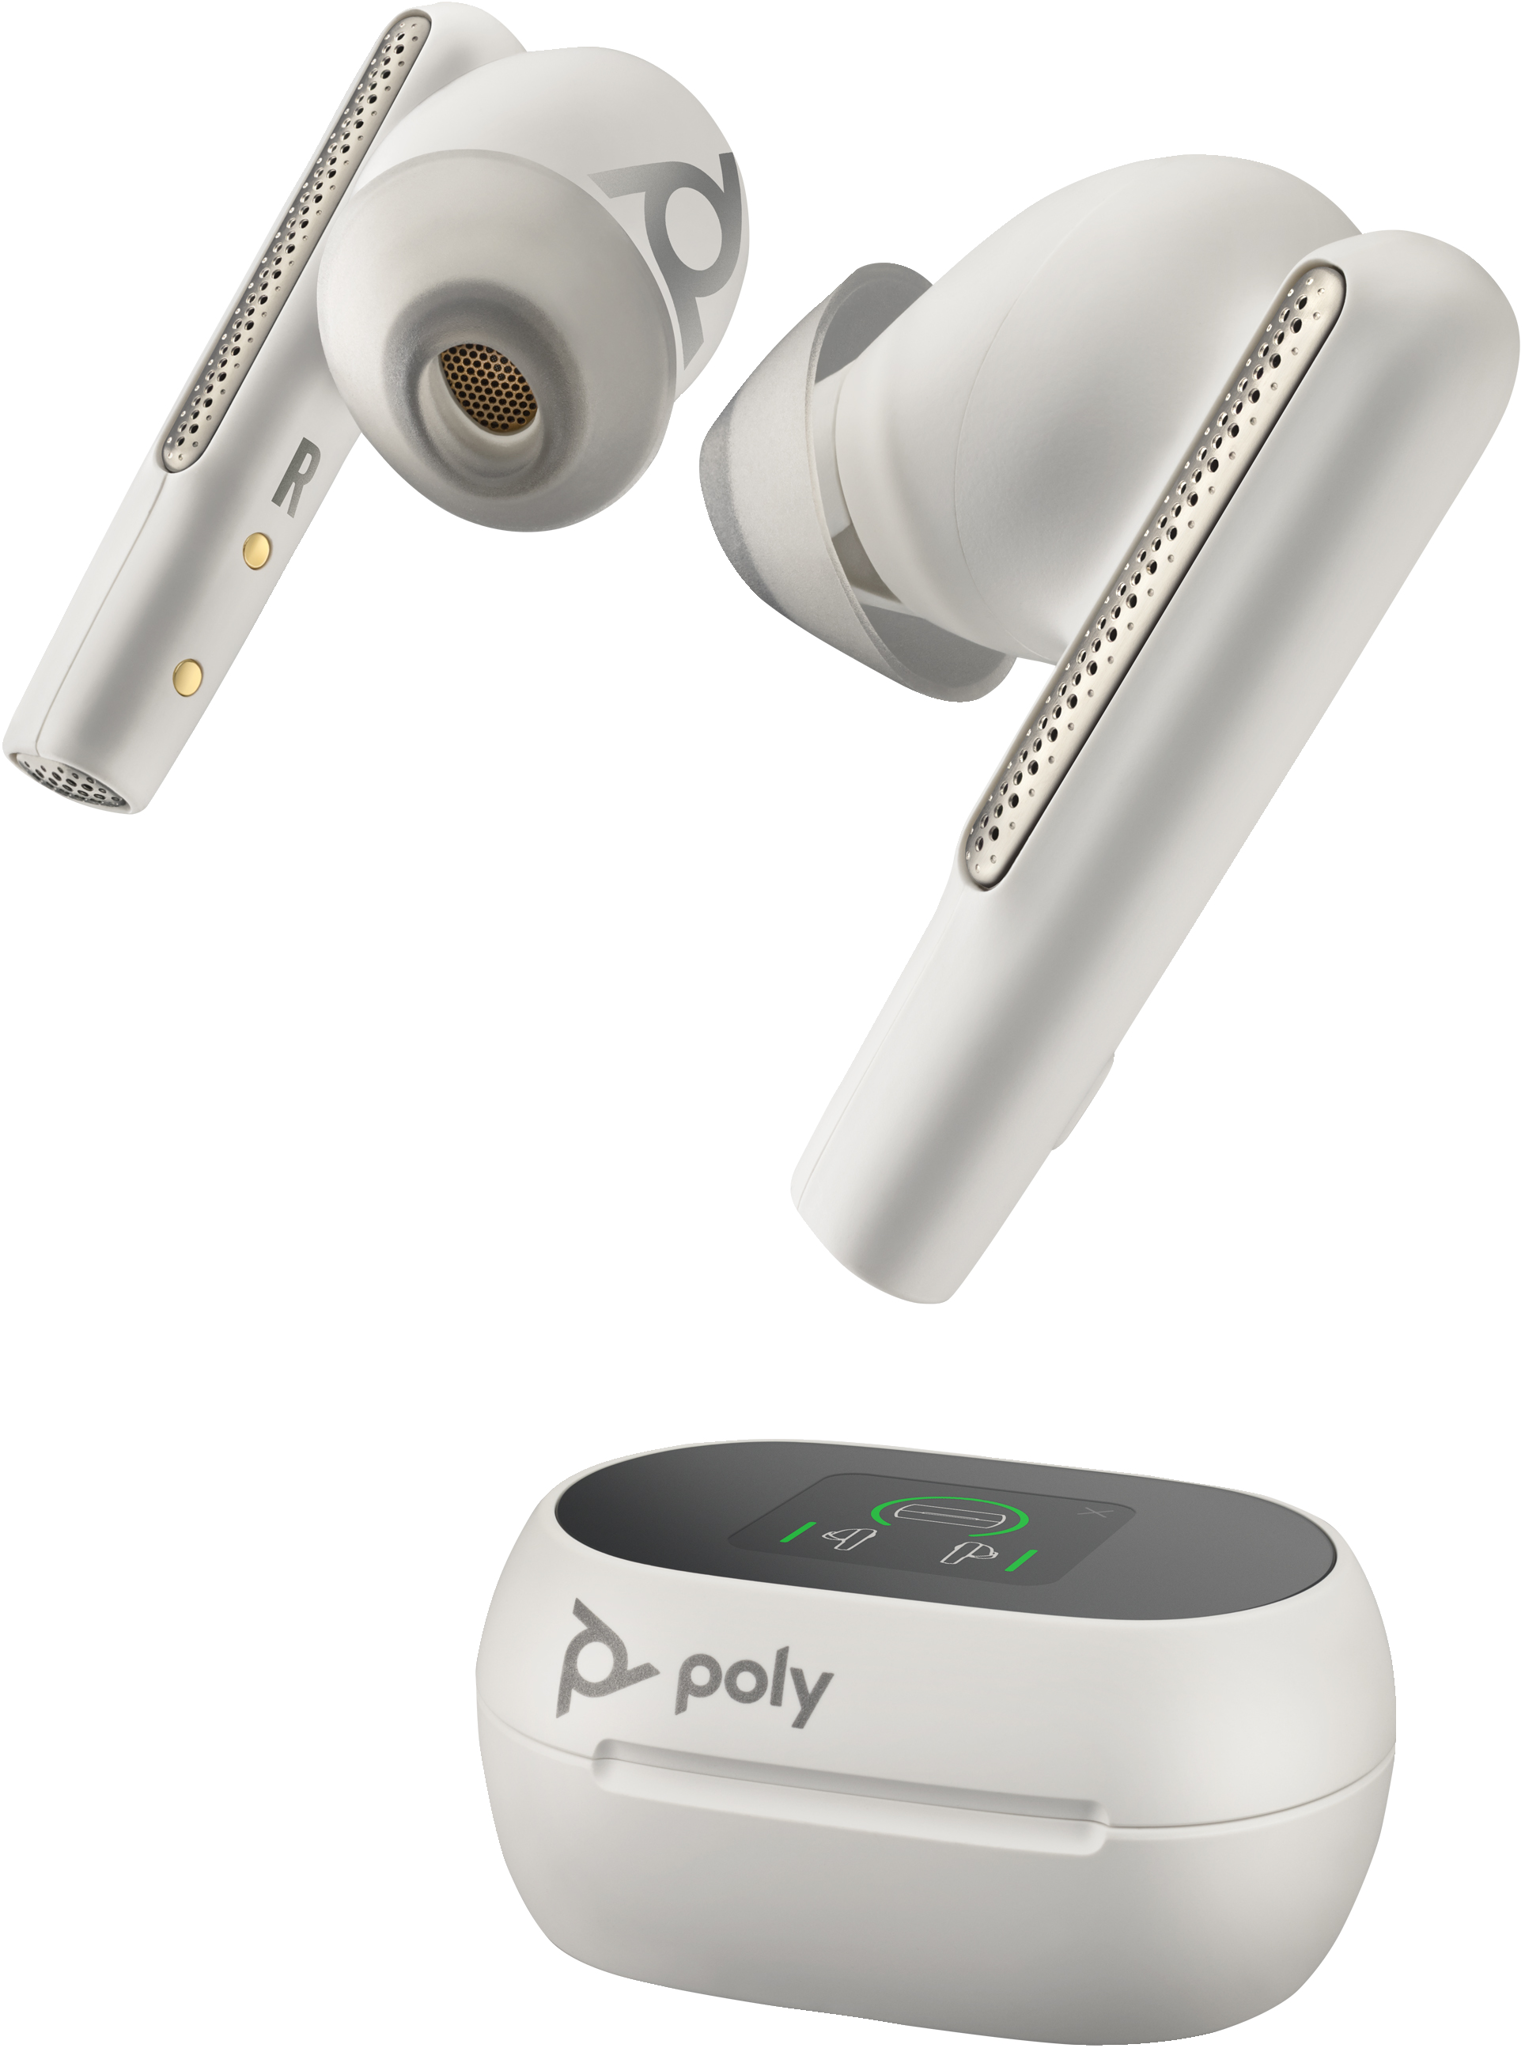 Bild von HP POLY Voyager Free 60+ UC Weißes Touchscreen-Ladeetui für BT700 USB-A-Adapter, Ladebehälter, Weiß